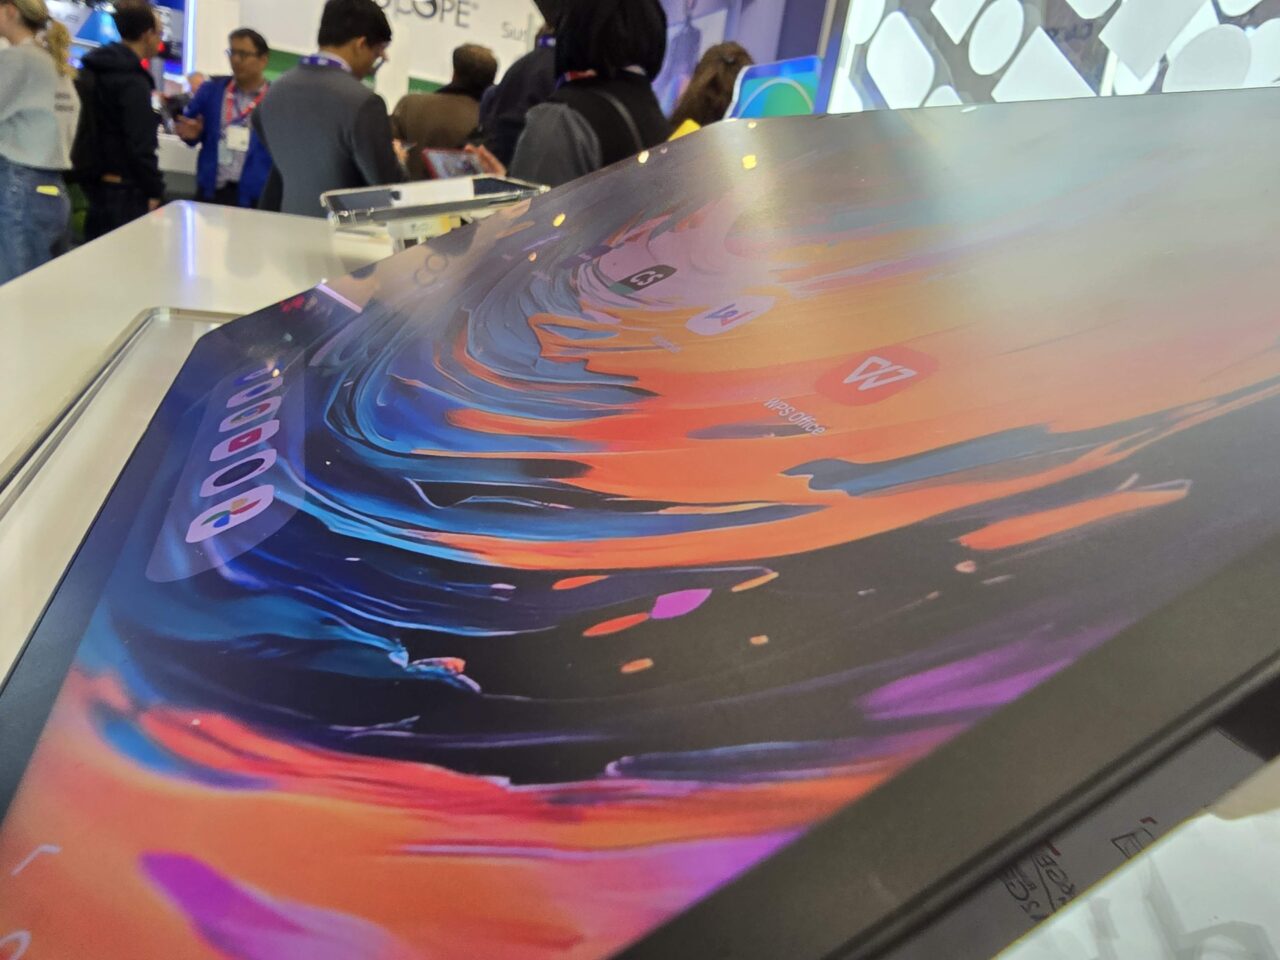 Ekrany laptopów z kolorowymi abstrakcyjnymi grafikami wystawione na targach, z tłem zamglonymi postaciami ludzi.